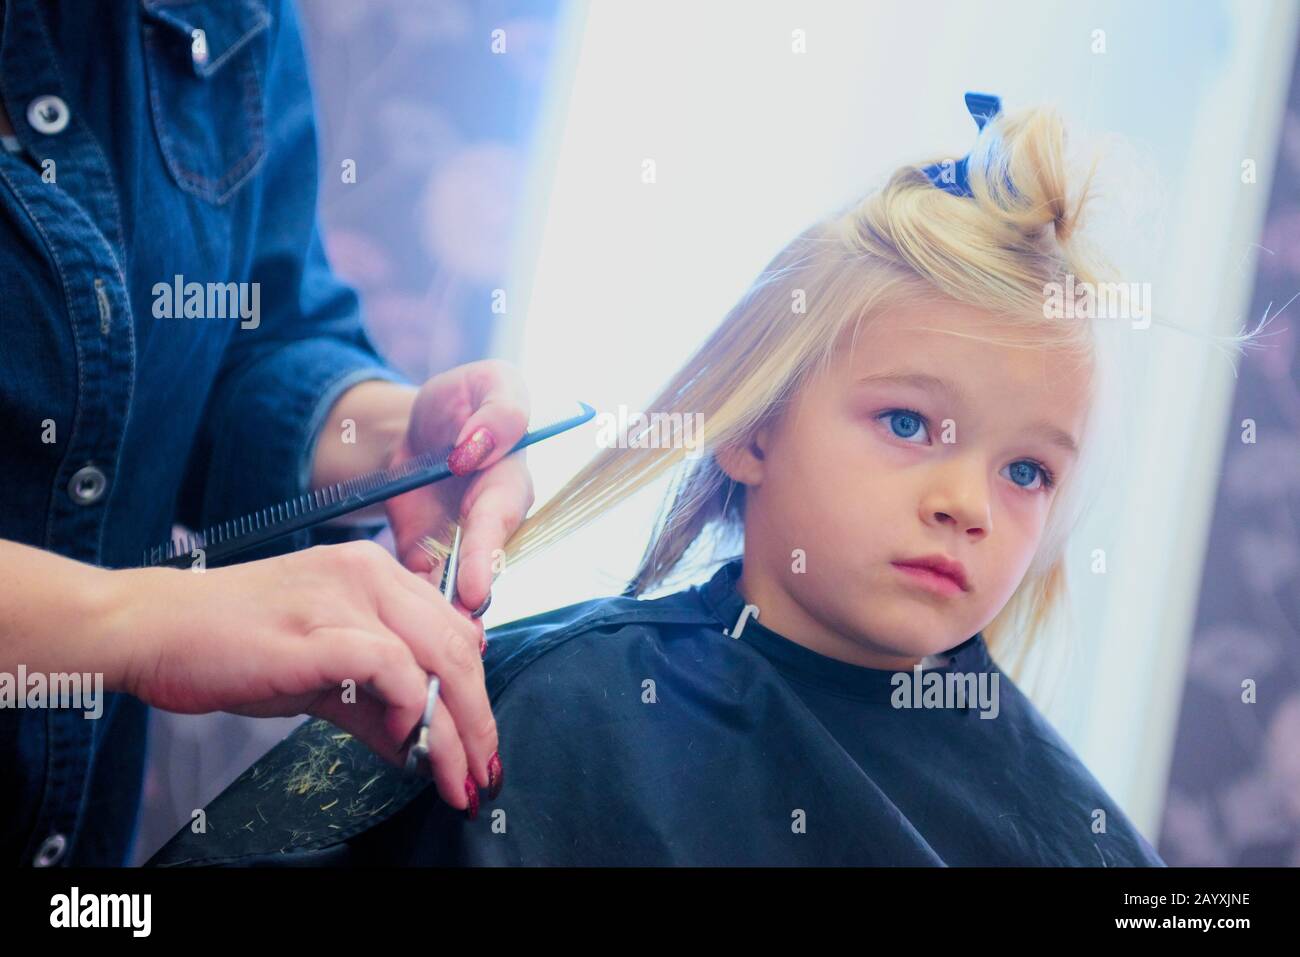 Petite fille mignonne dans le salon de coiffure. Mise au point sélective Banque D'Images